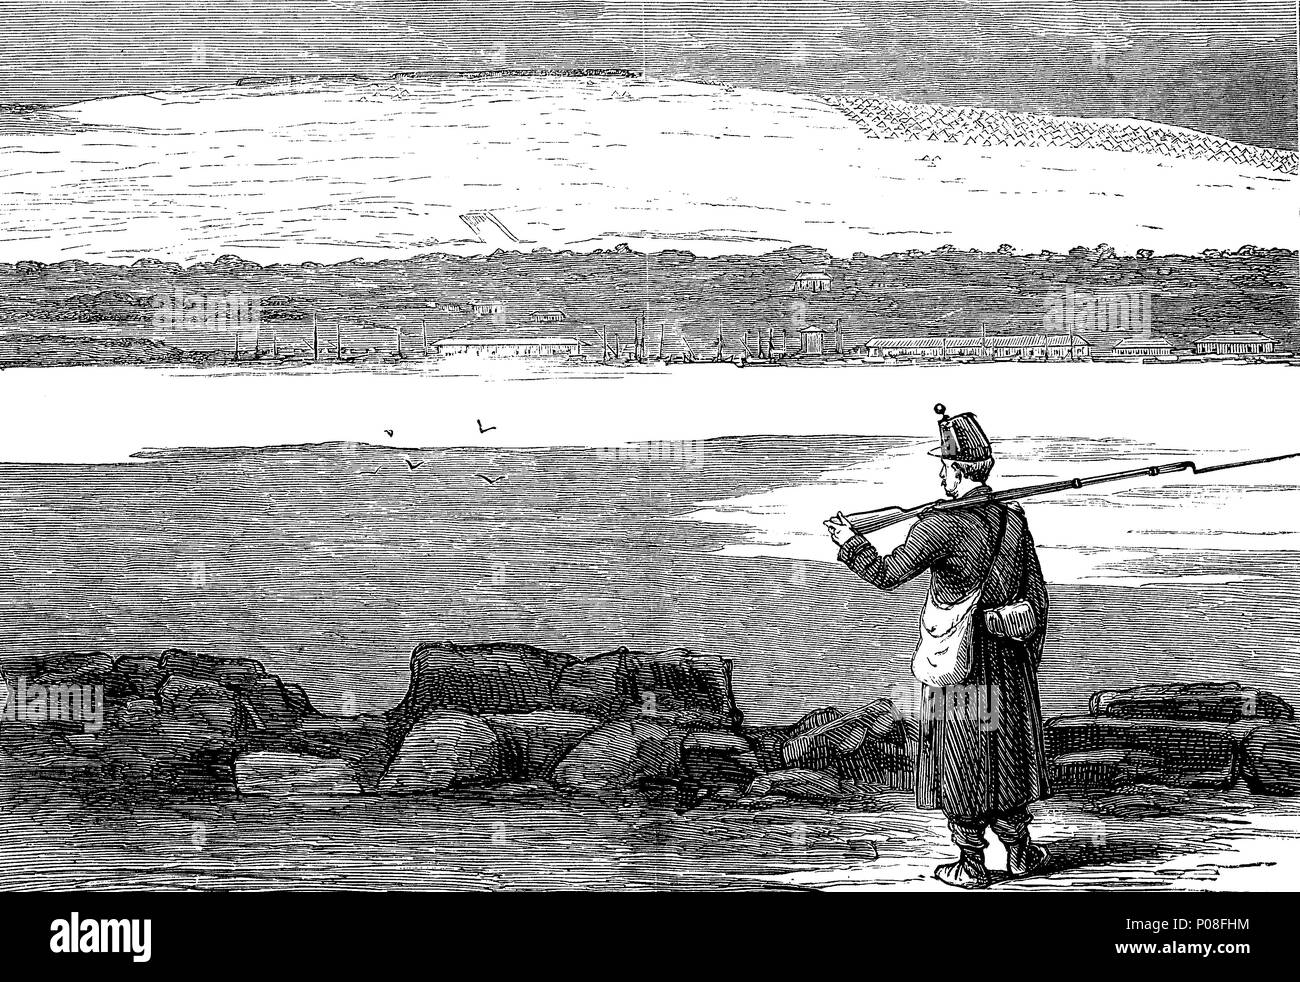 Rustchuk, die stärkste türkische Position auf der Donau, Bulgarien, Russisch-türkischen Krieg von 1787-1792, digitale Verbesserte Reproduktion einer Vorlage drucken aus dem Jahr 1881 Stockfoto